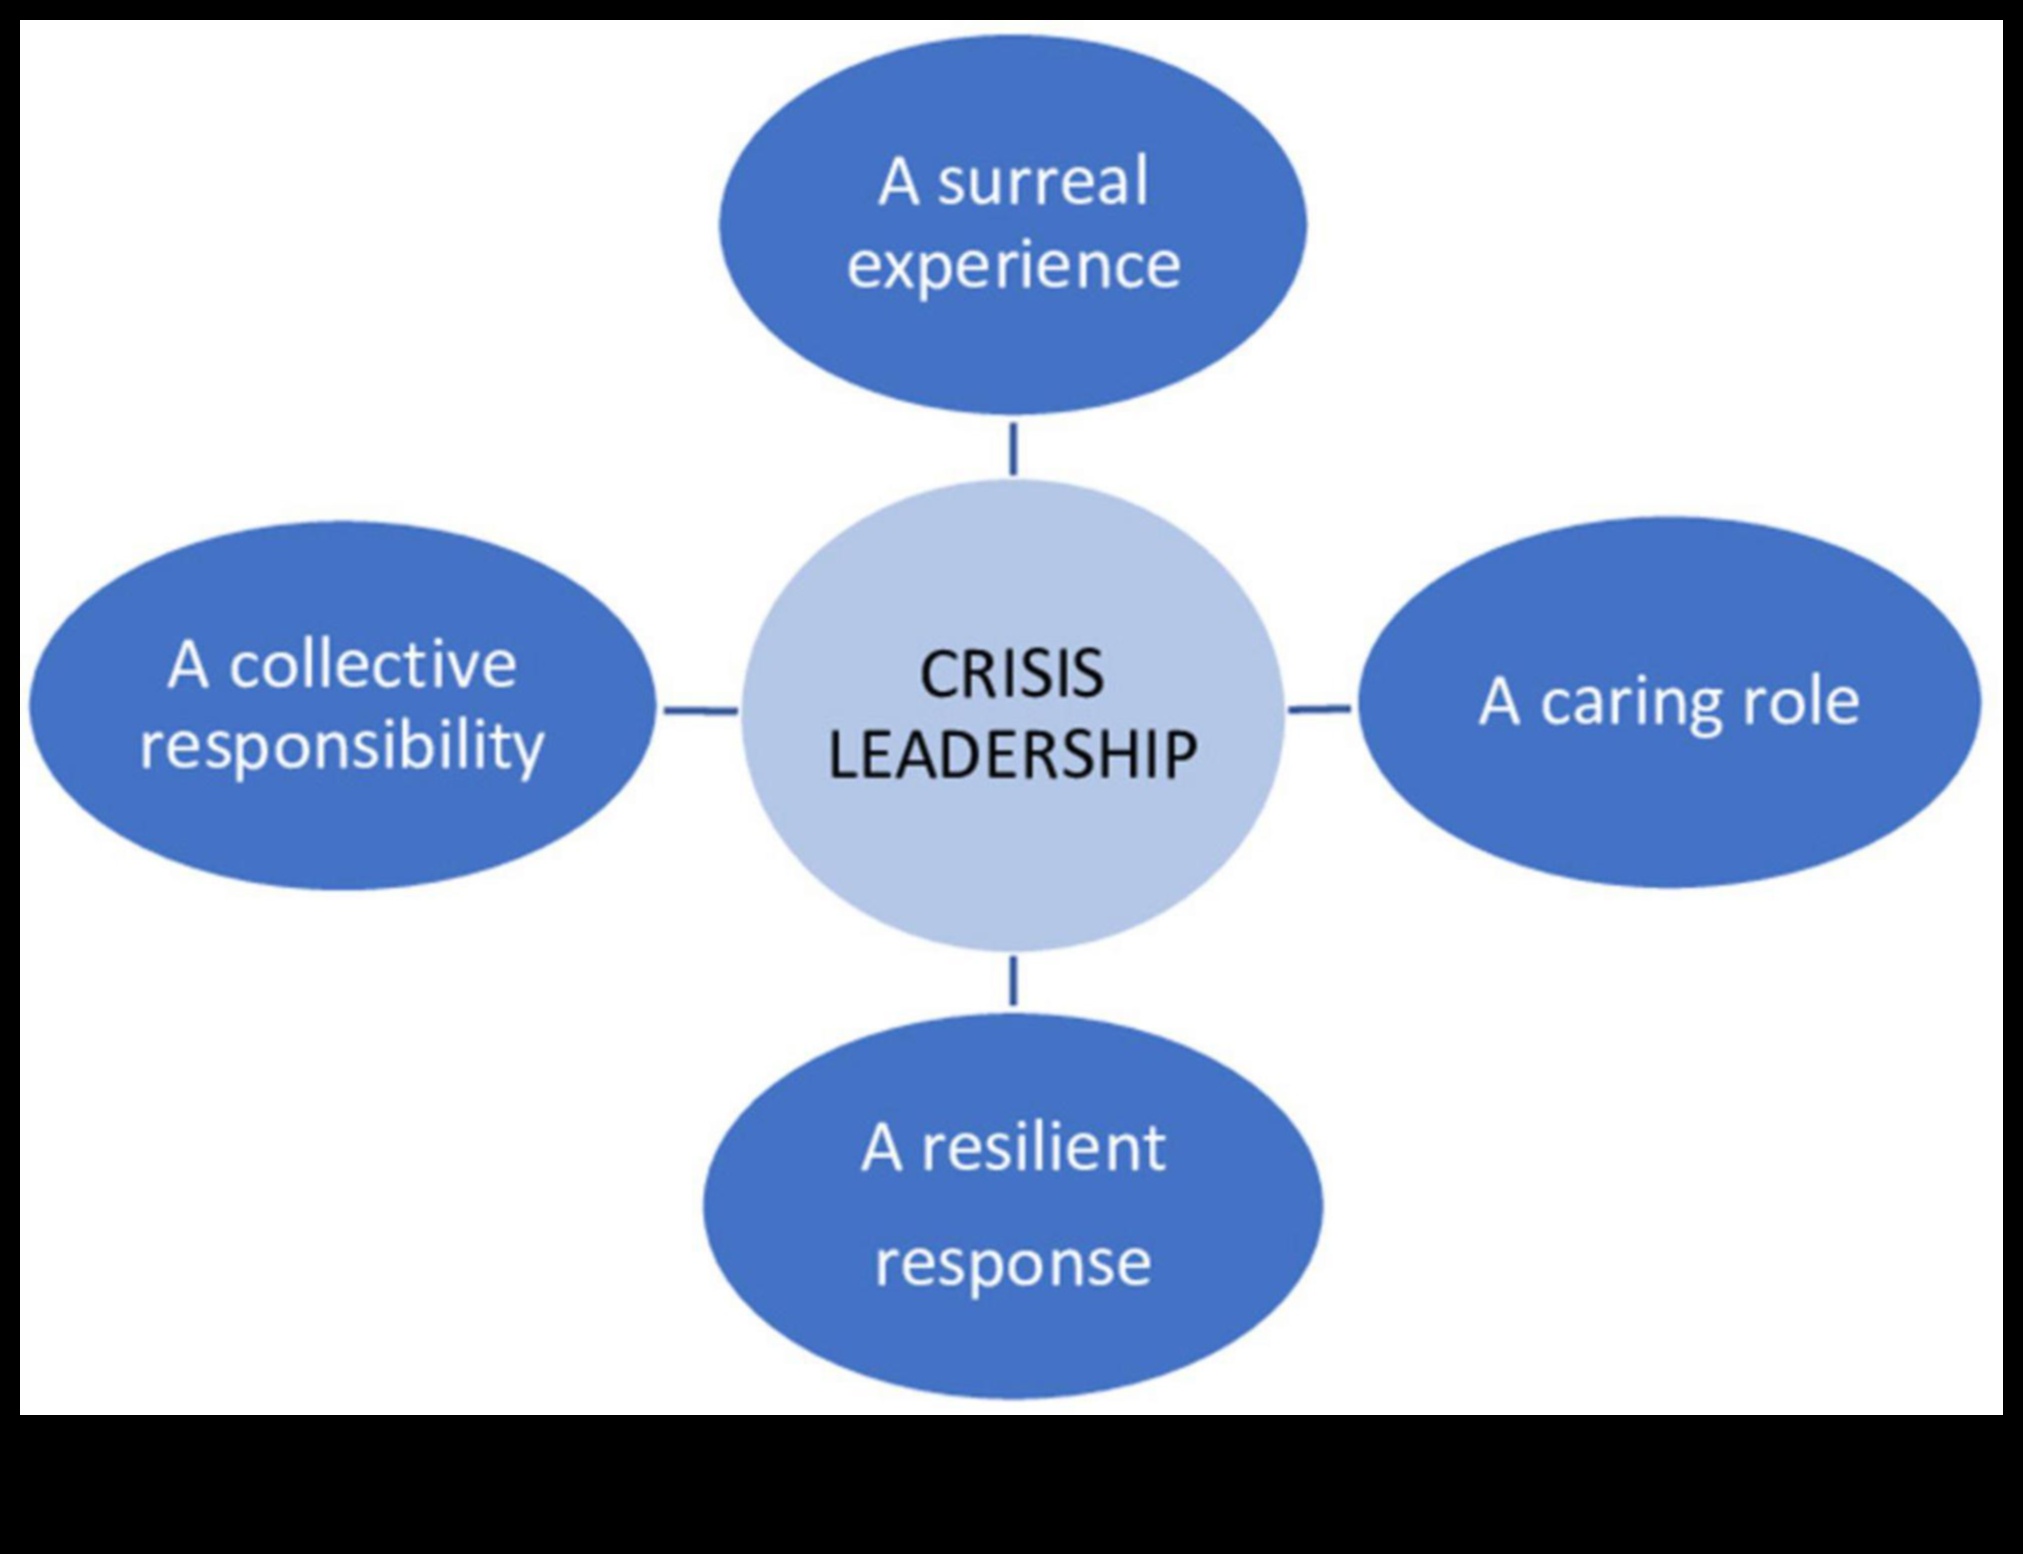 Înțelepții în afaceri: perspective de la liderii care au navigat în călătoria leadershipului